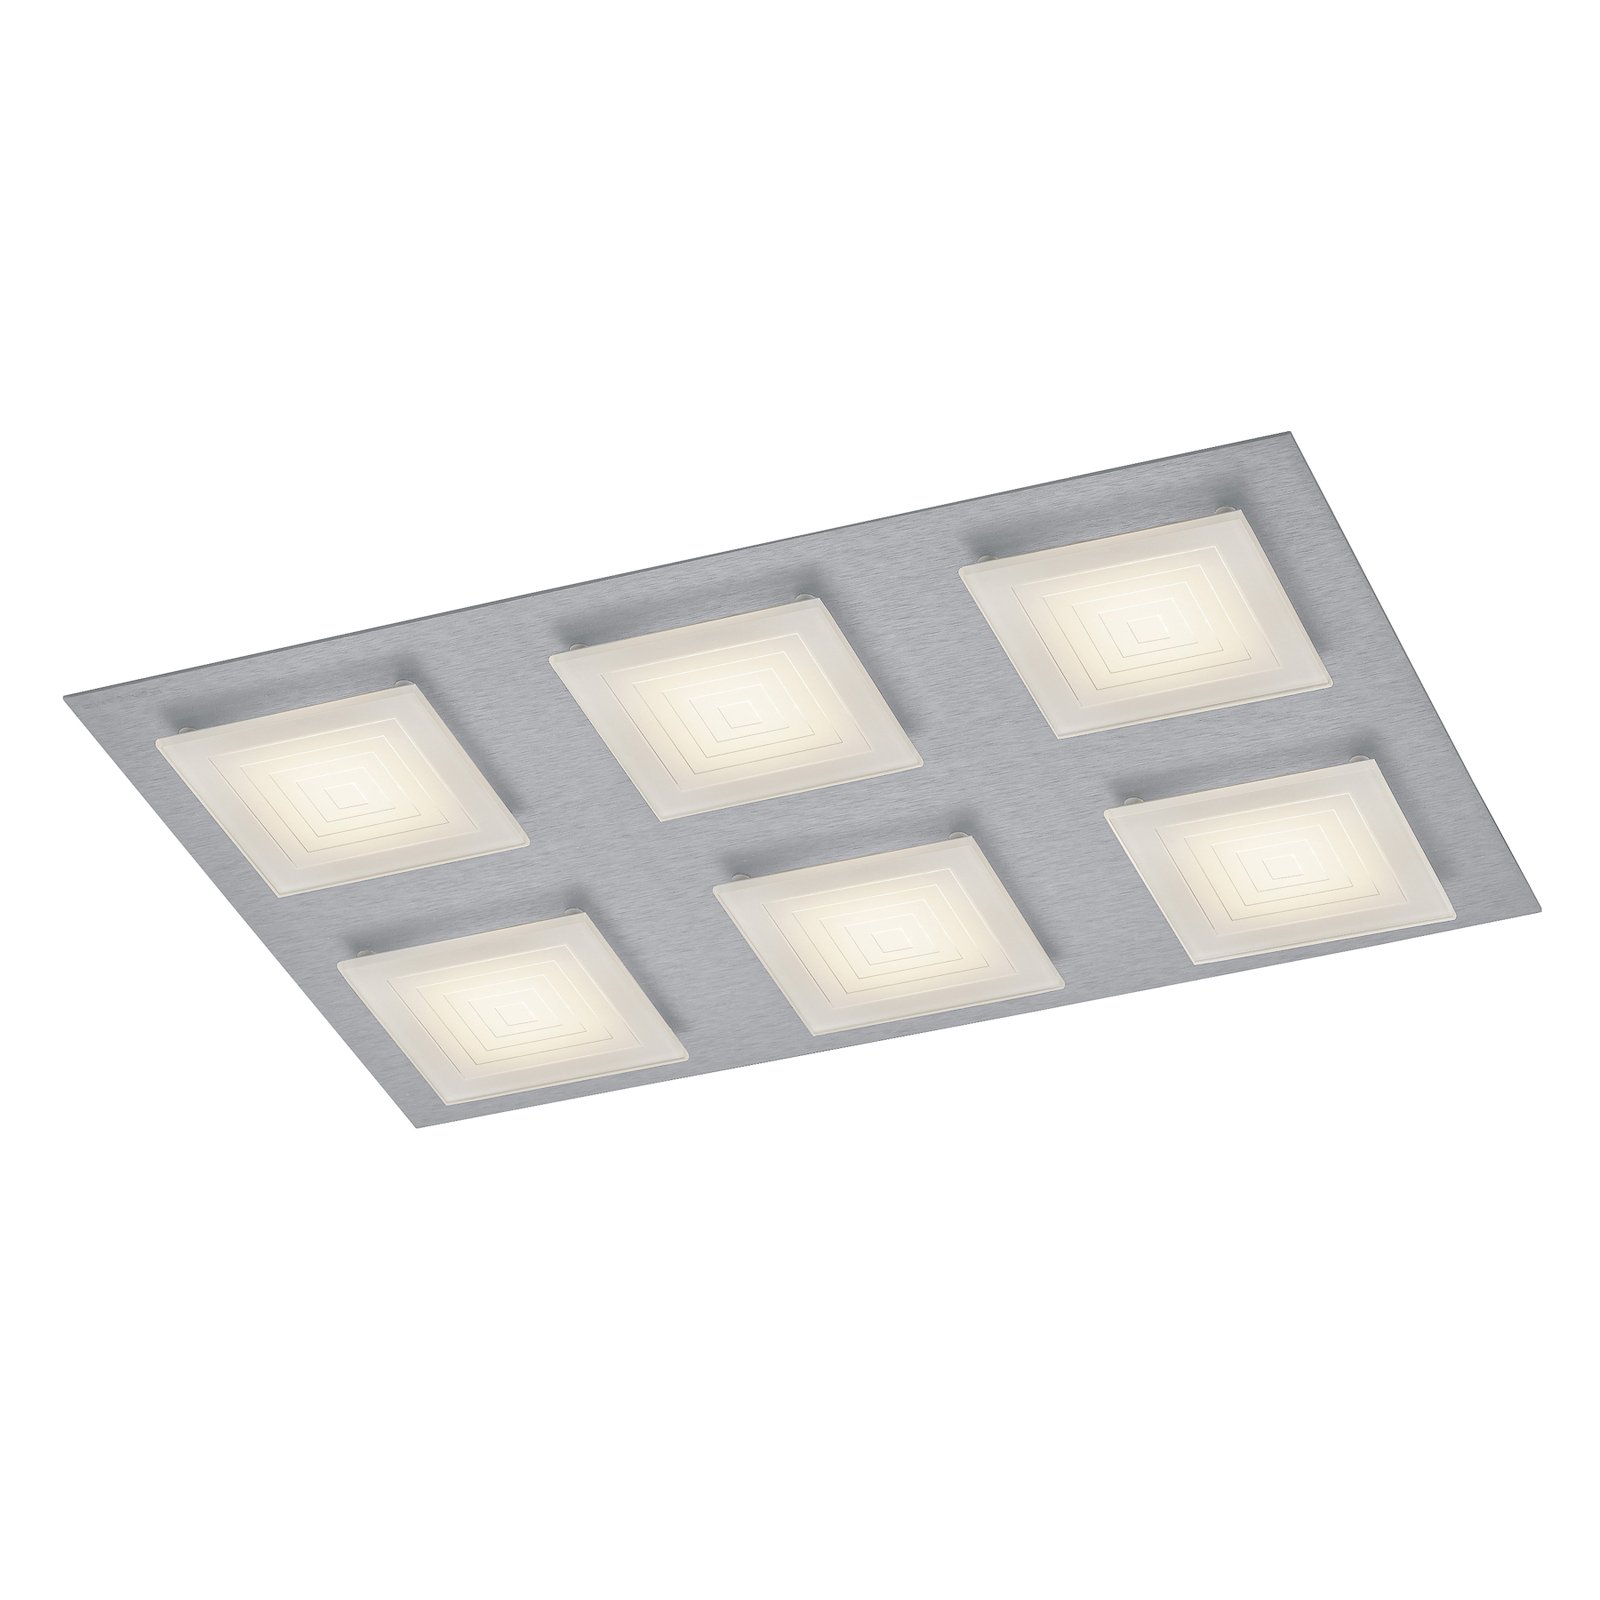 BANKAMP Ino LED ceiling light 6-bulb silver